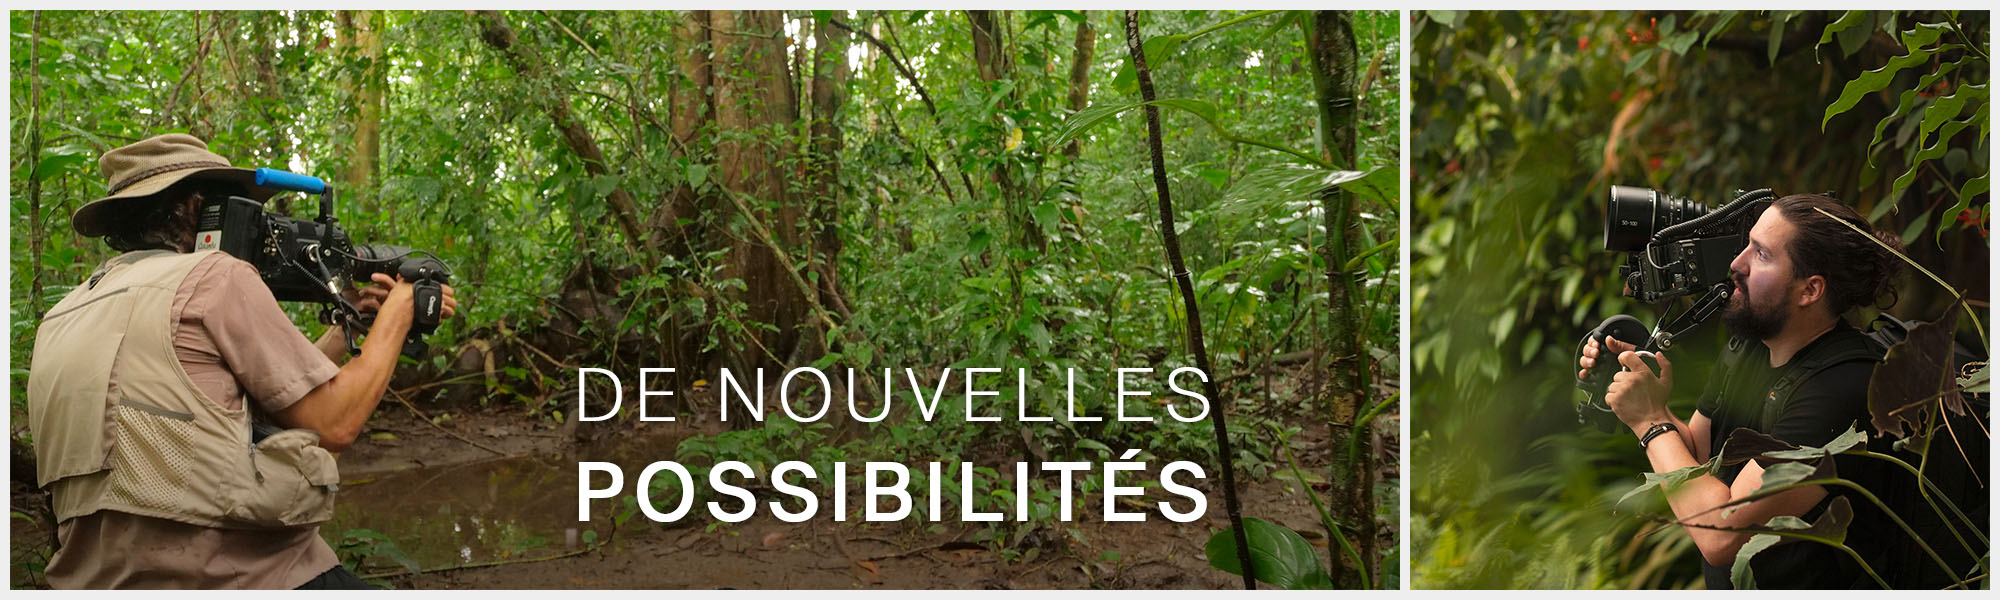 Olivier Halin dans la jungle du Costa Rica avec une caméra BlackMagic et la S GRIP PRO. Caméraman dans la jungle humide avec une Z CAM et poignée de caméra programmable.